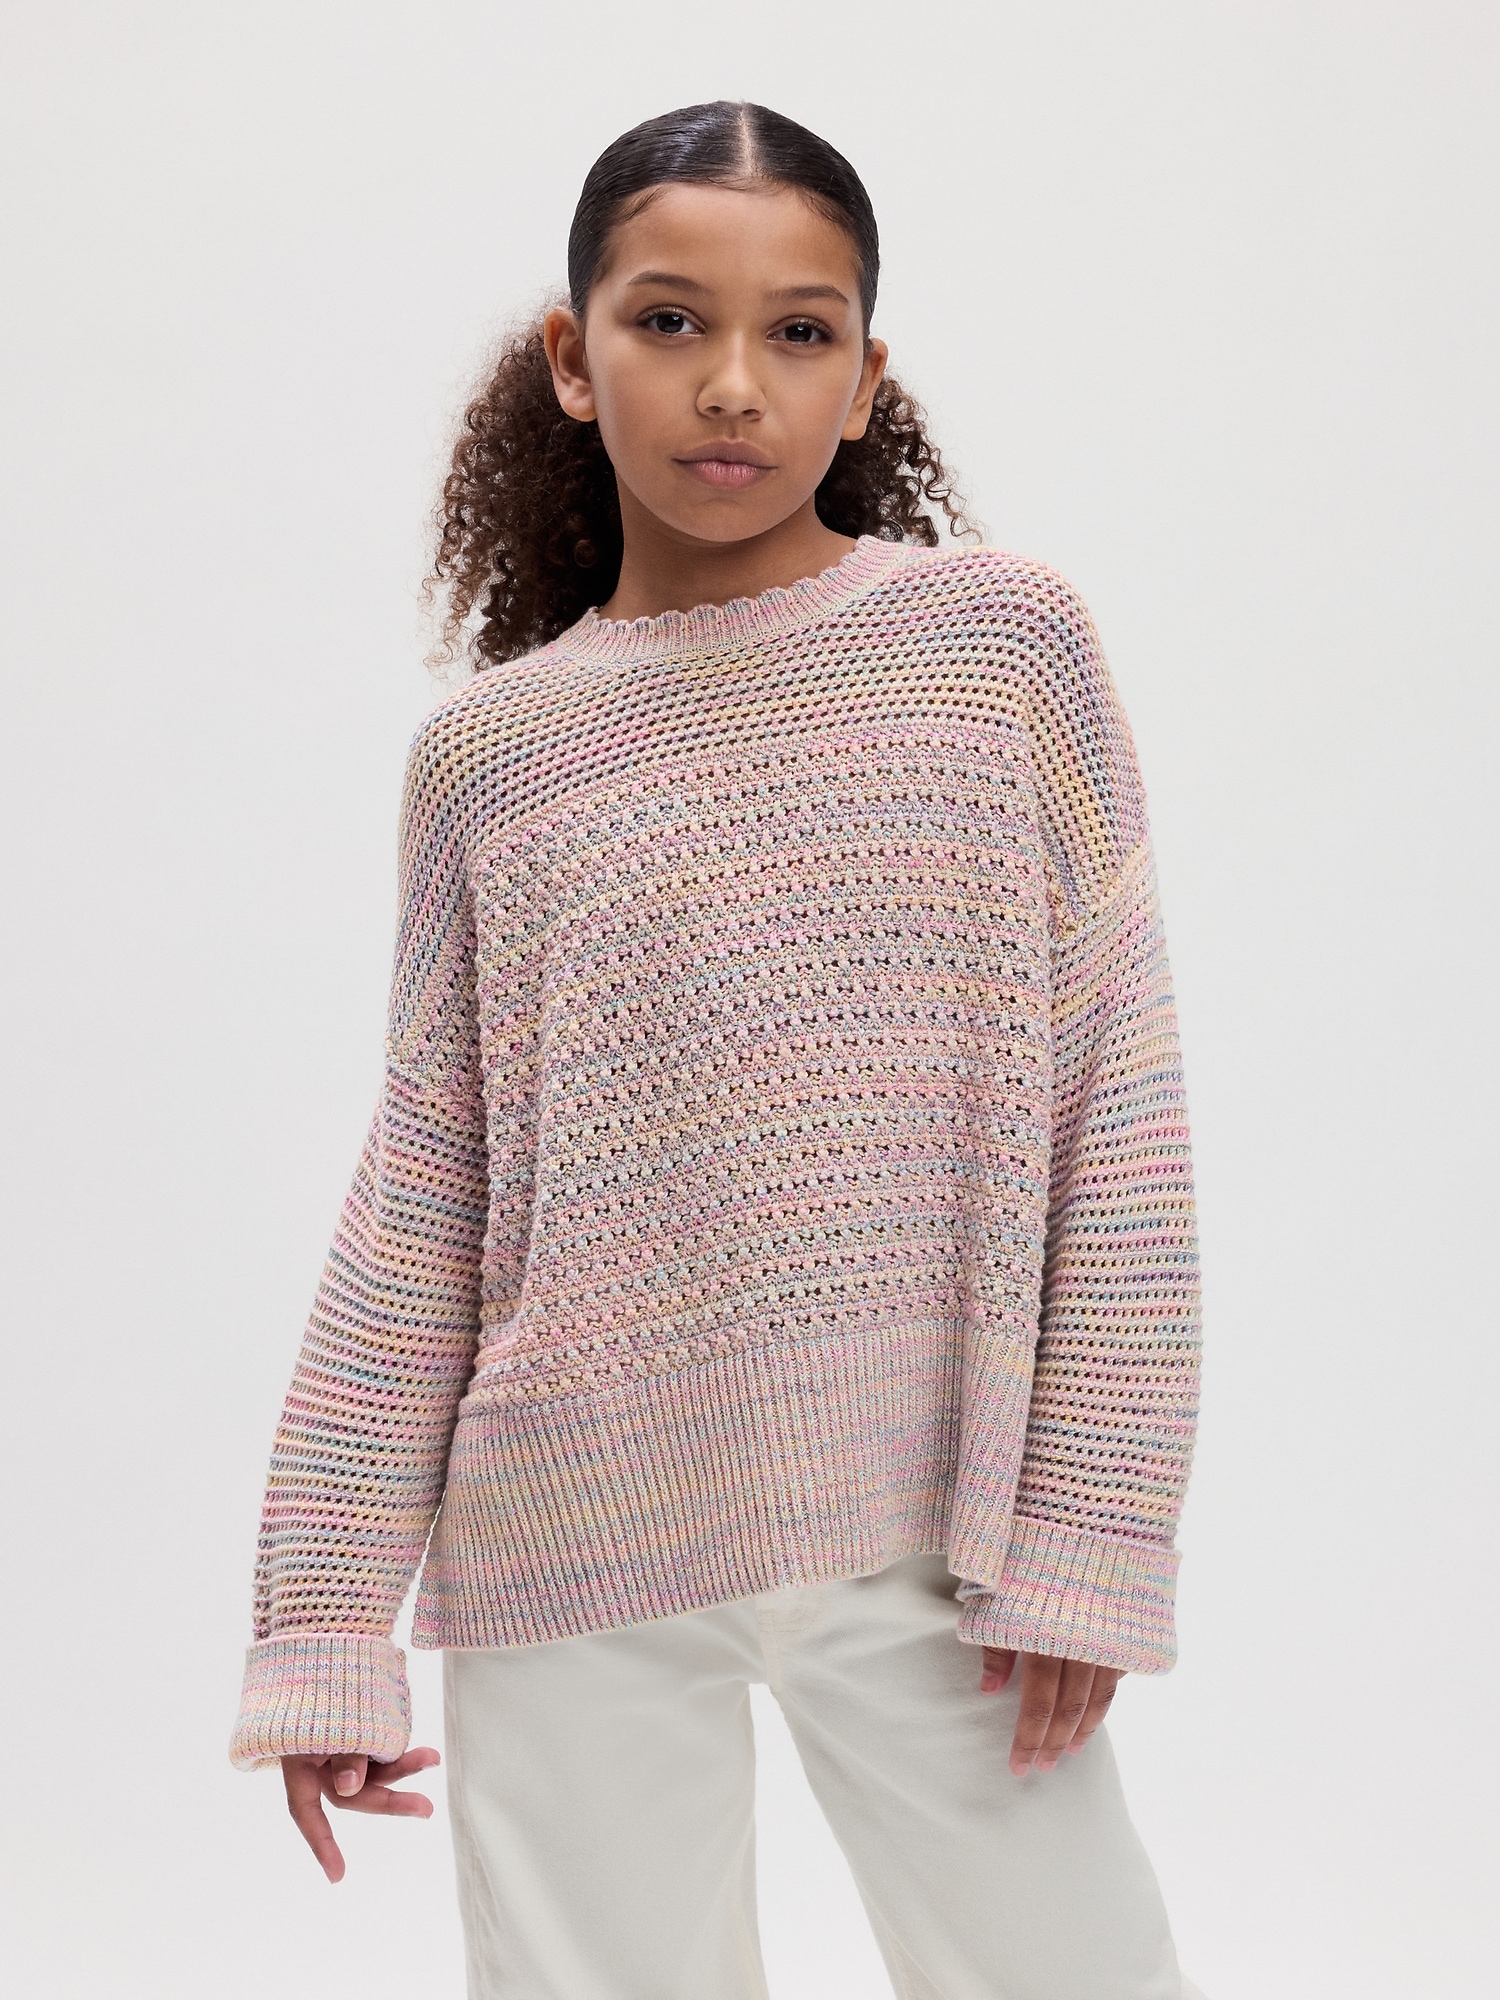 Kids Crochet Sweater | Gap